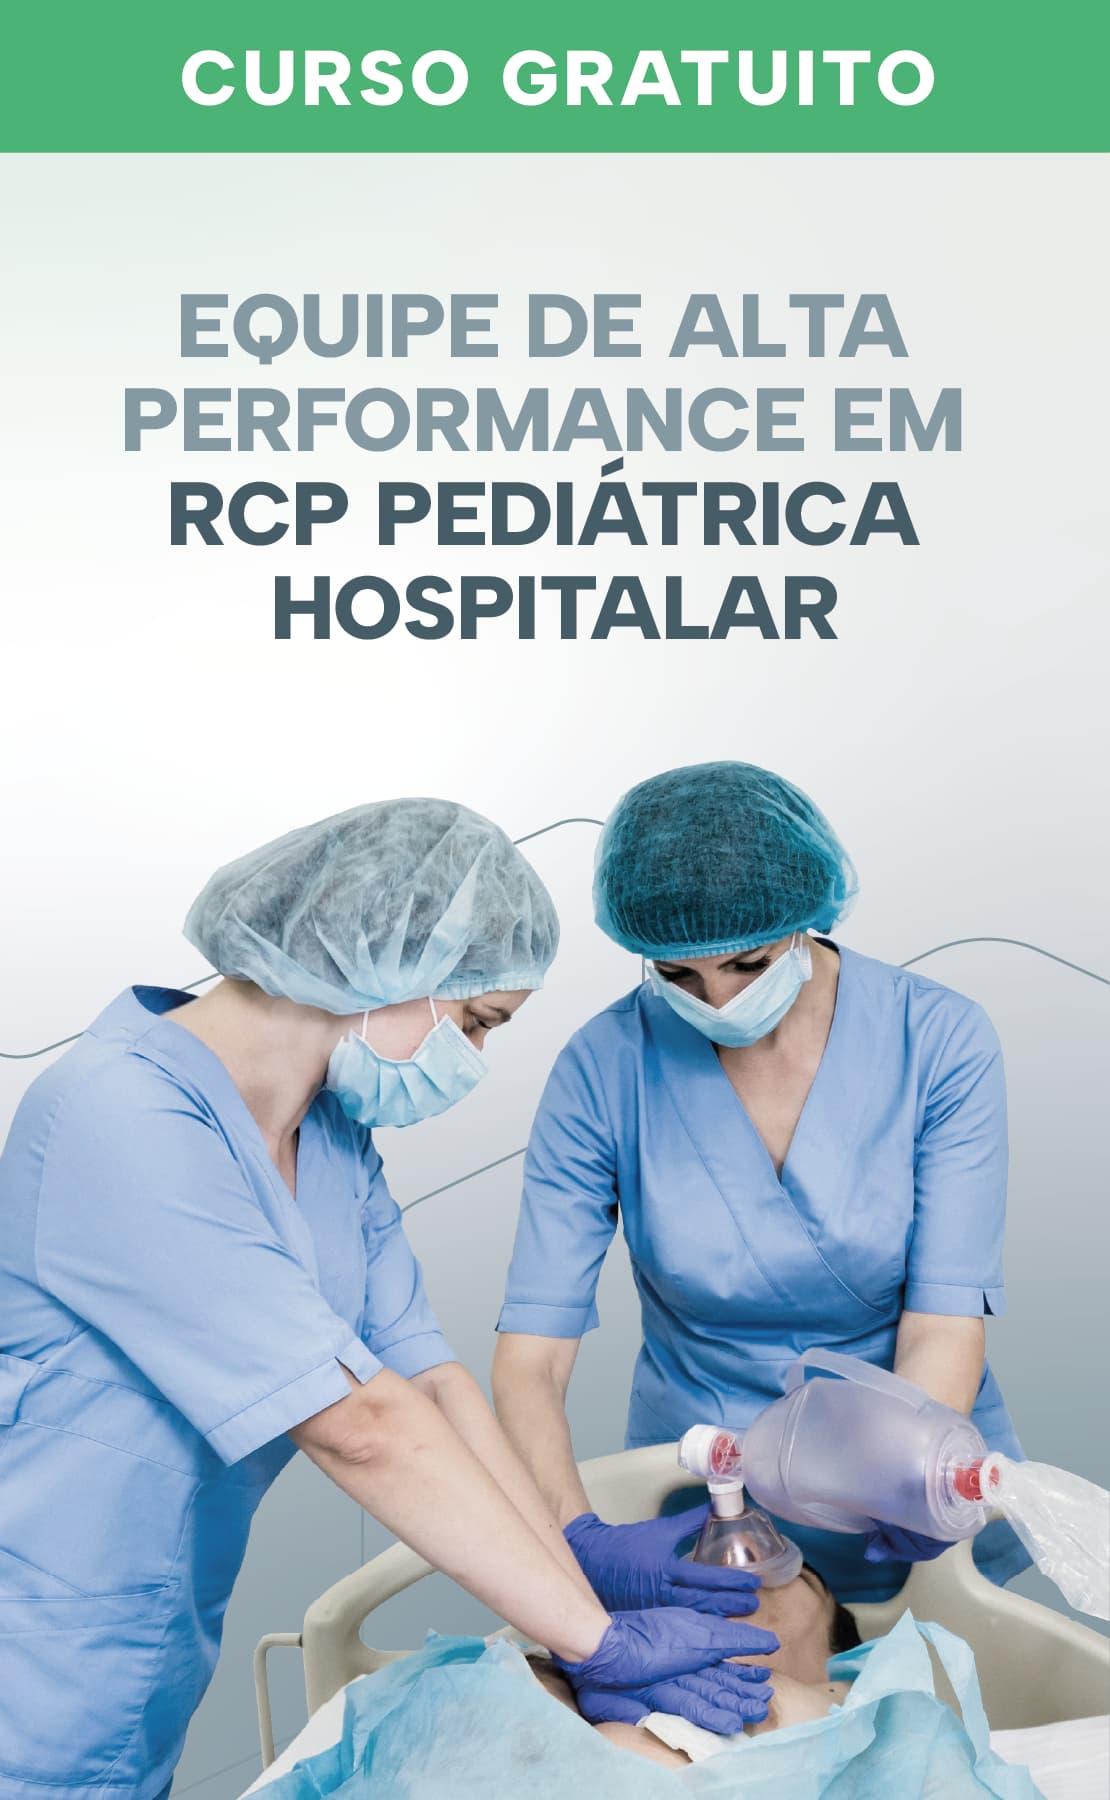 Equipe de alta performance em RCP pediátrica hospitalar